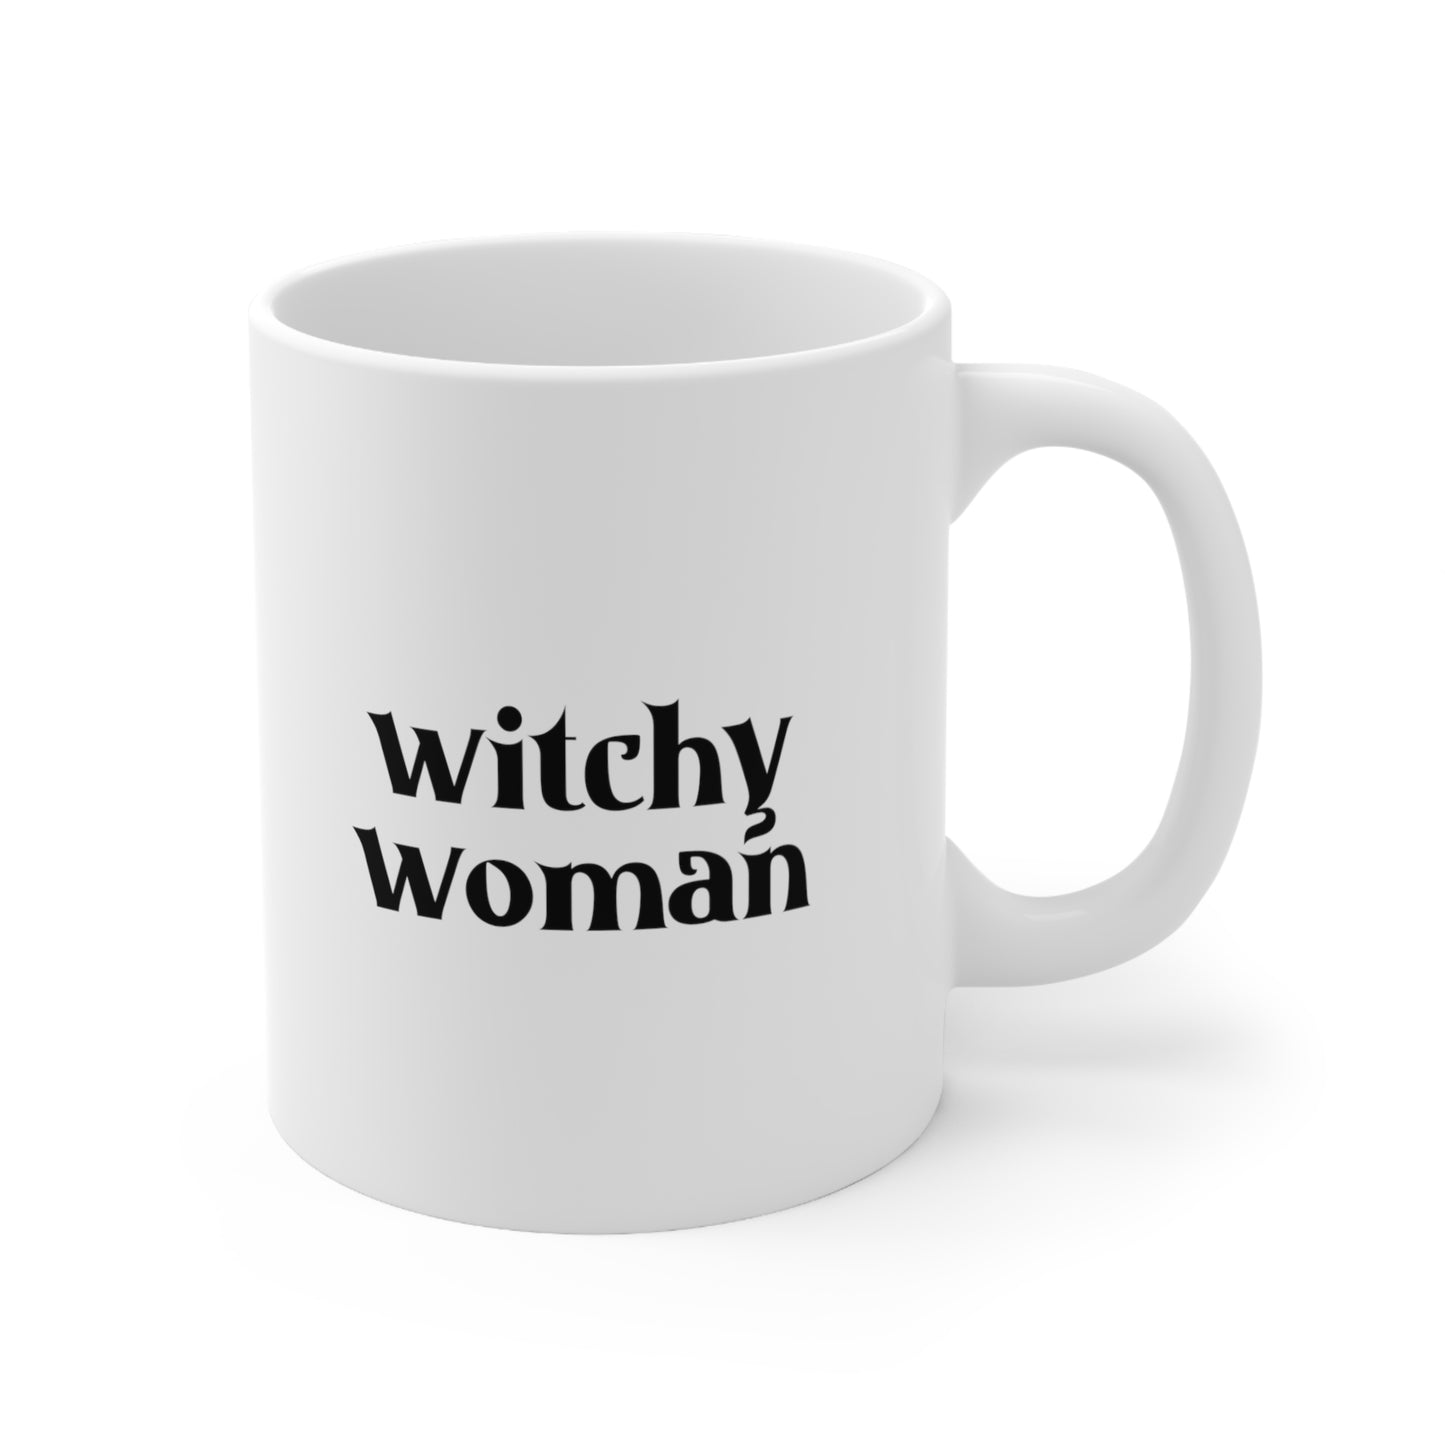 Witch Woman Coffee Mug 11oz